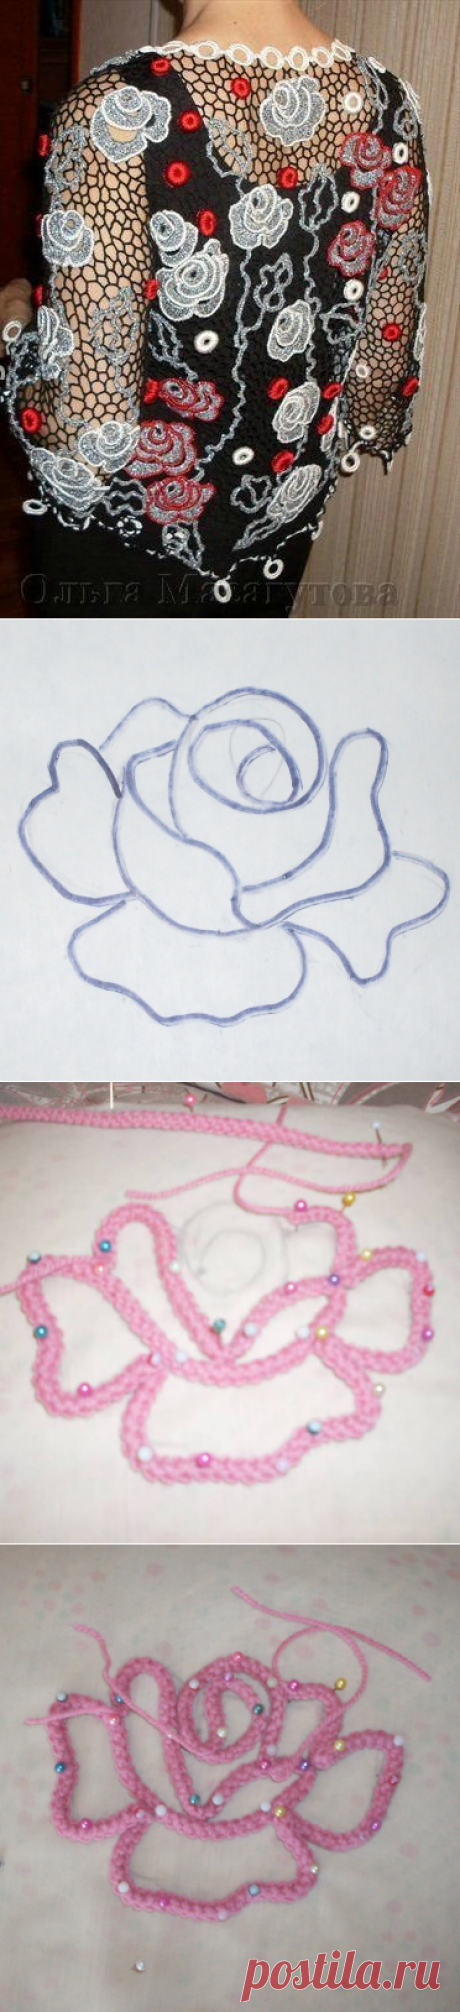 Вязание. Розы из шнурка (ирландское кружево), МK.